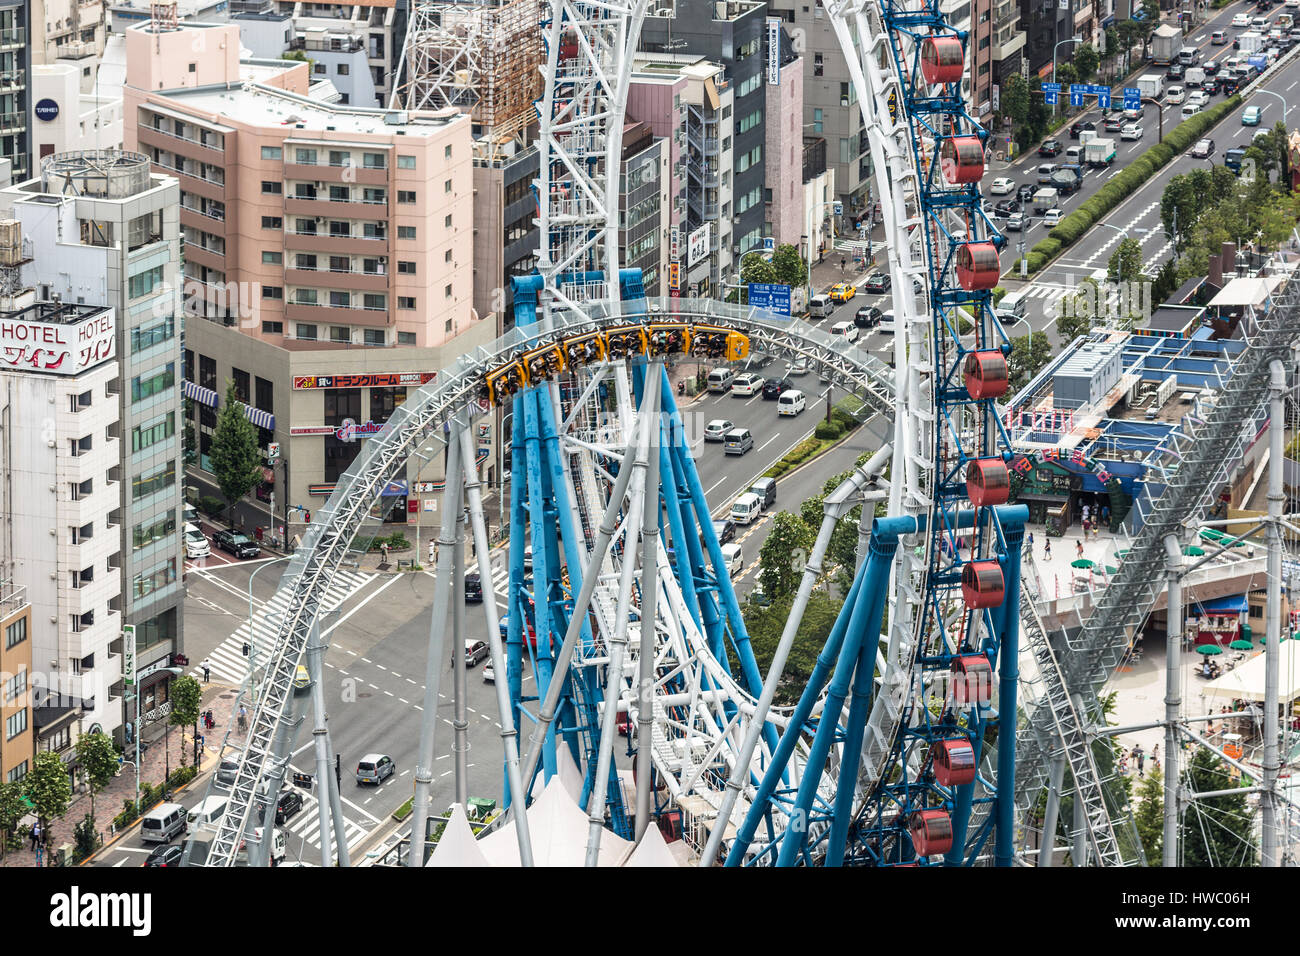 TOKYO, Giappone - Agosto 17, 2015: le persone godono di un roller coaster ride in all'aperto un parco dei divertimenti sulla parte superiore di un edificio nel cuore di Tokyo, Giappone Foto Stock